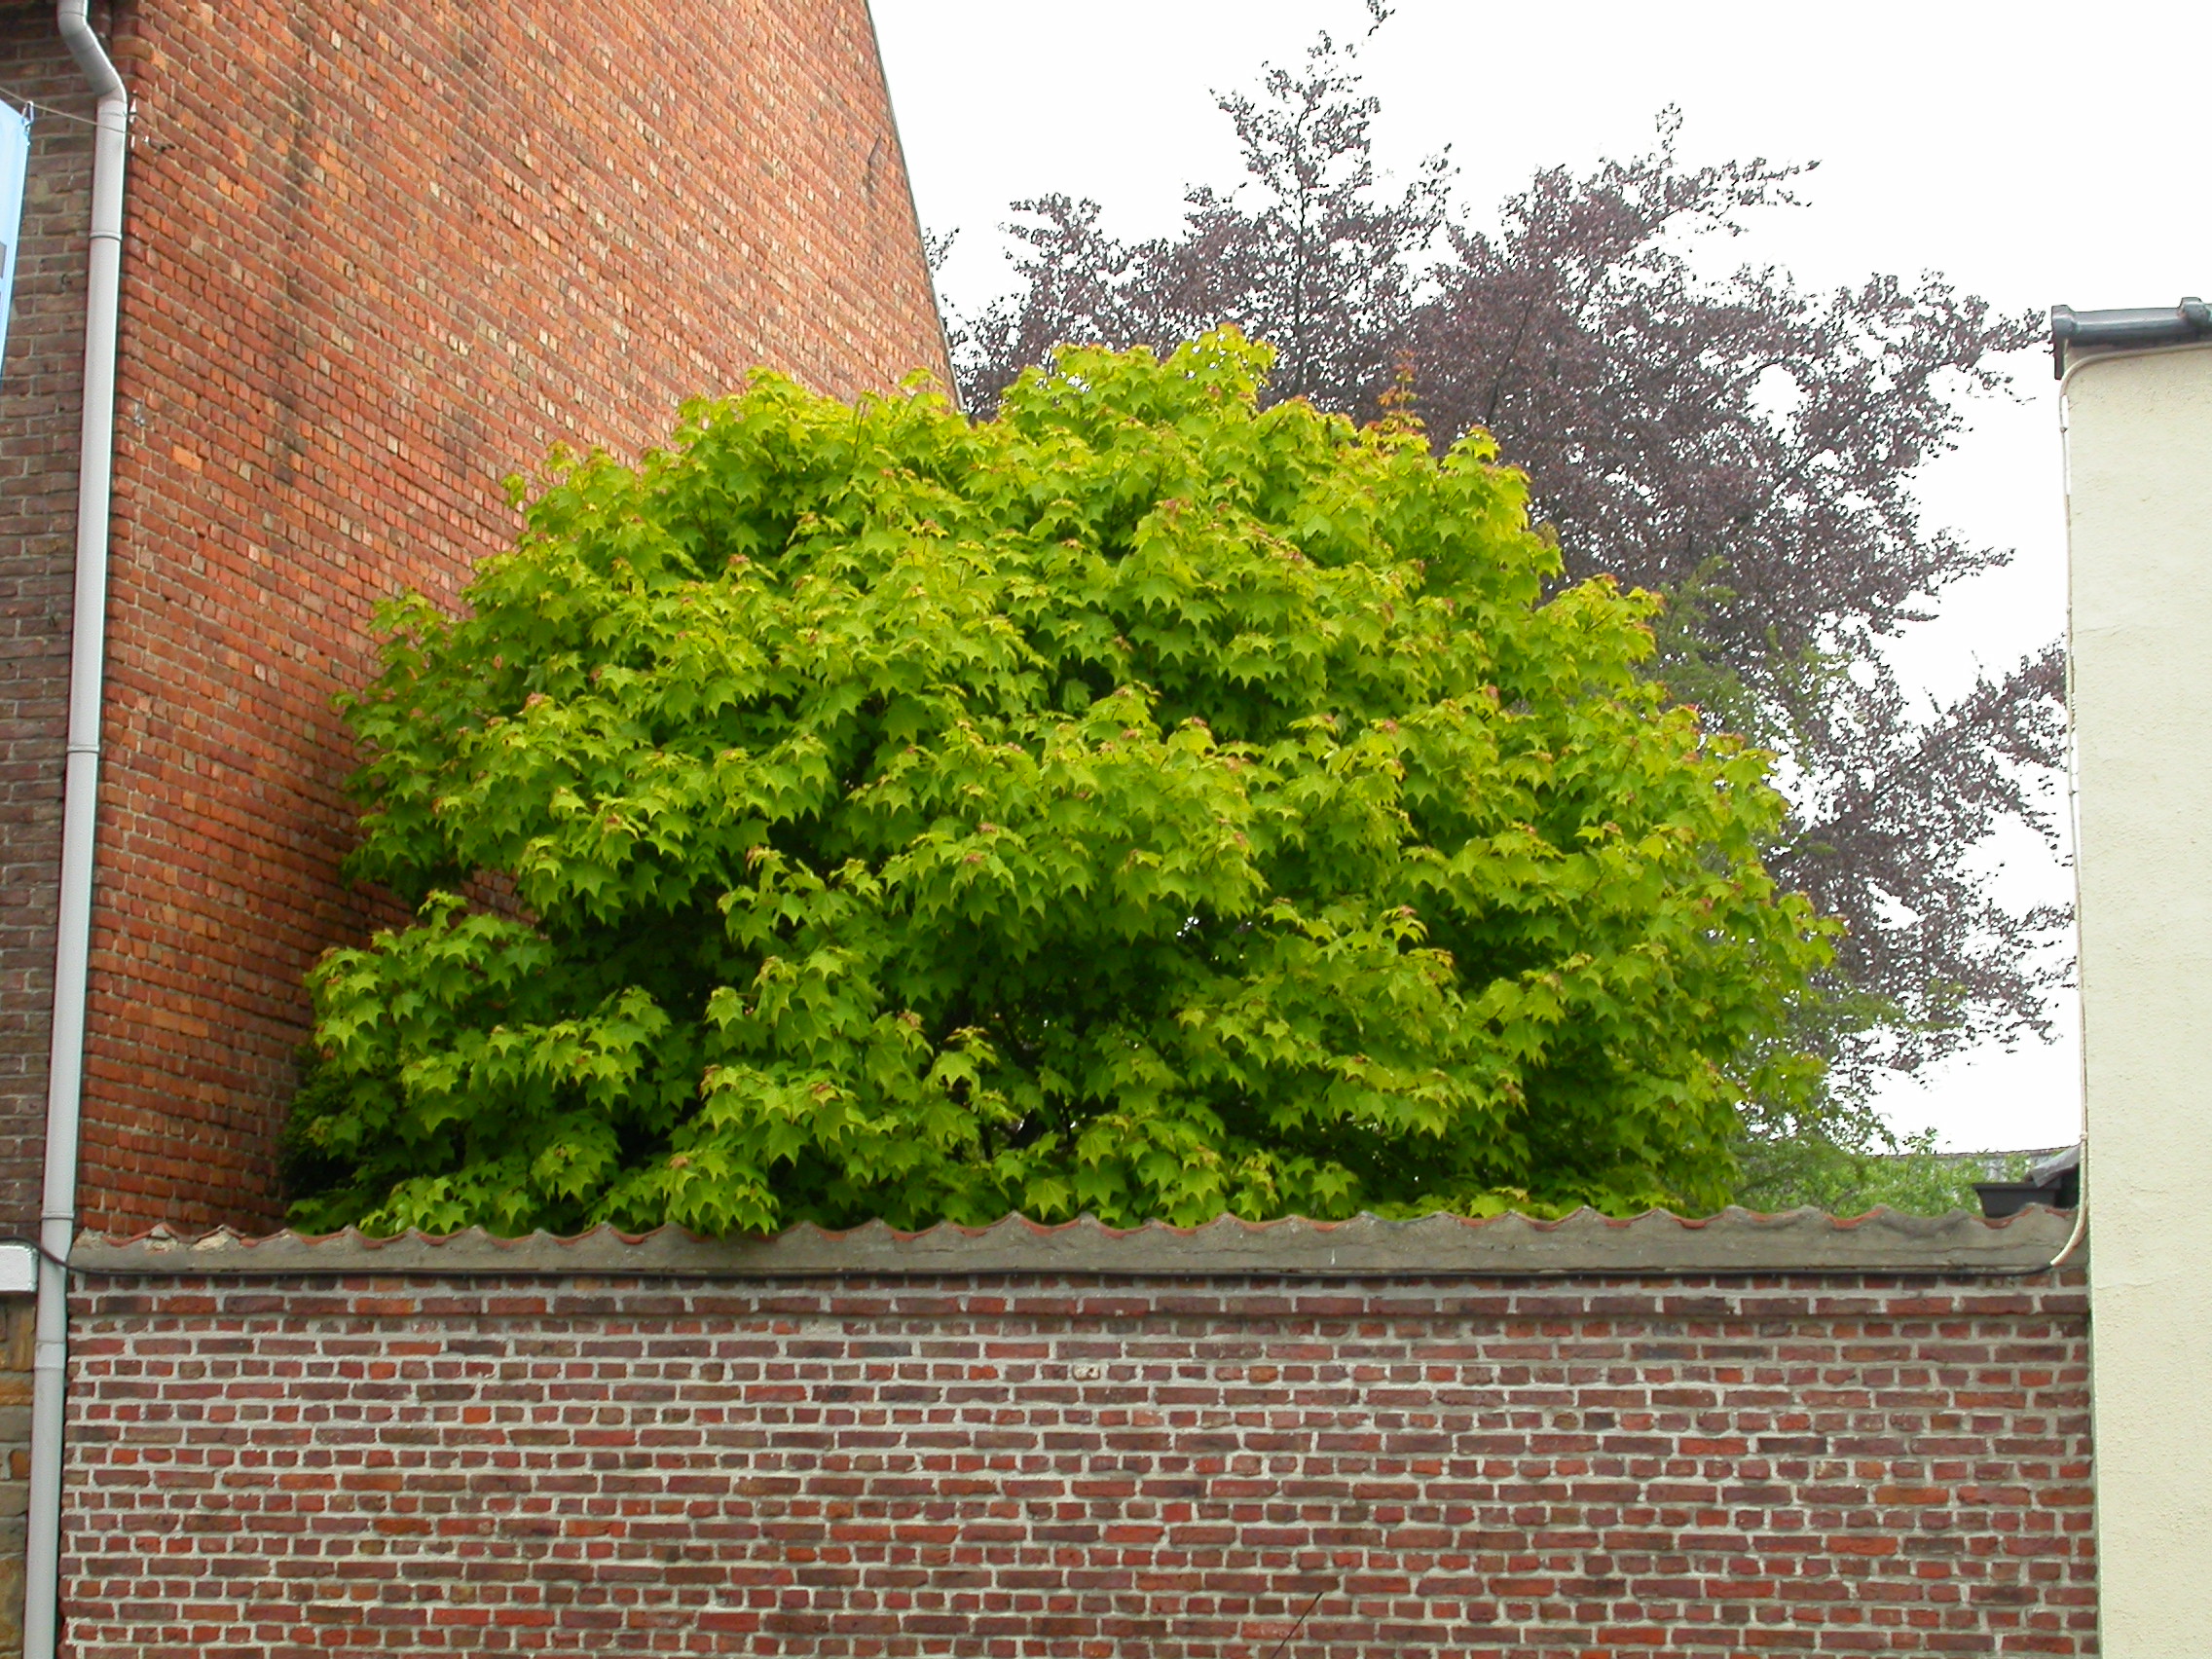 paul tree leafs green top garden wall